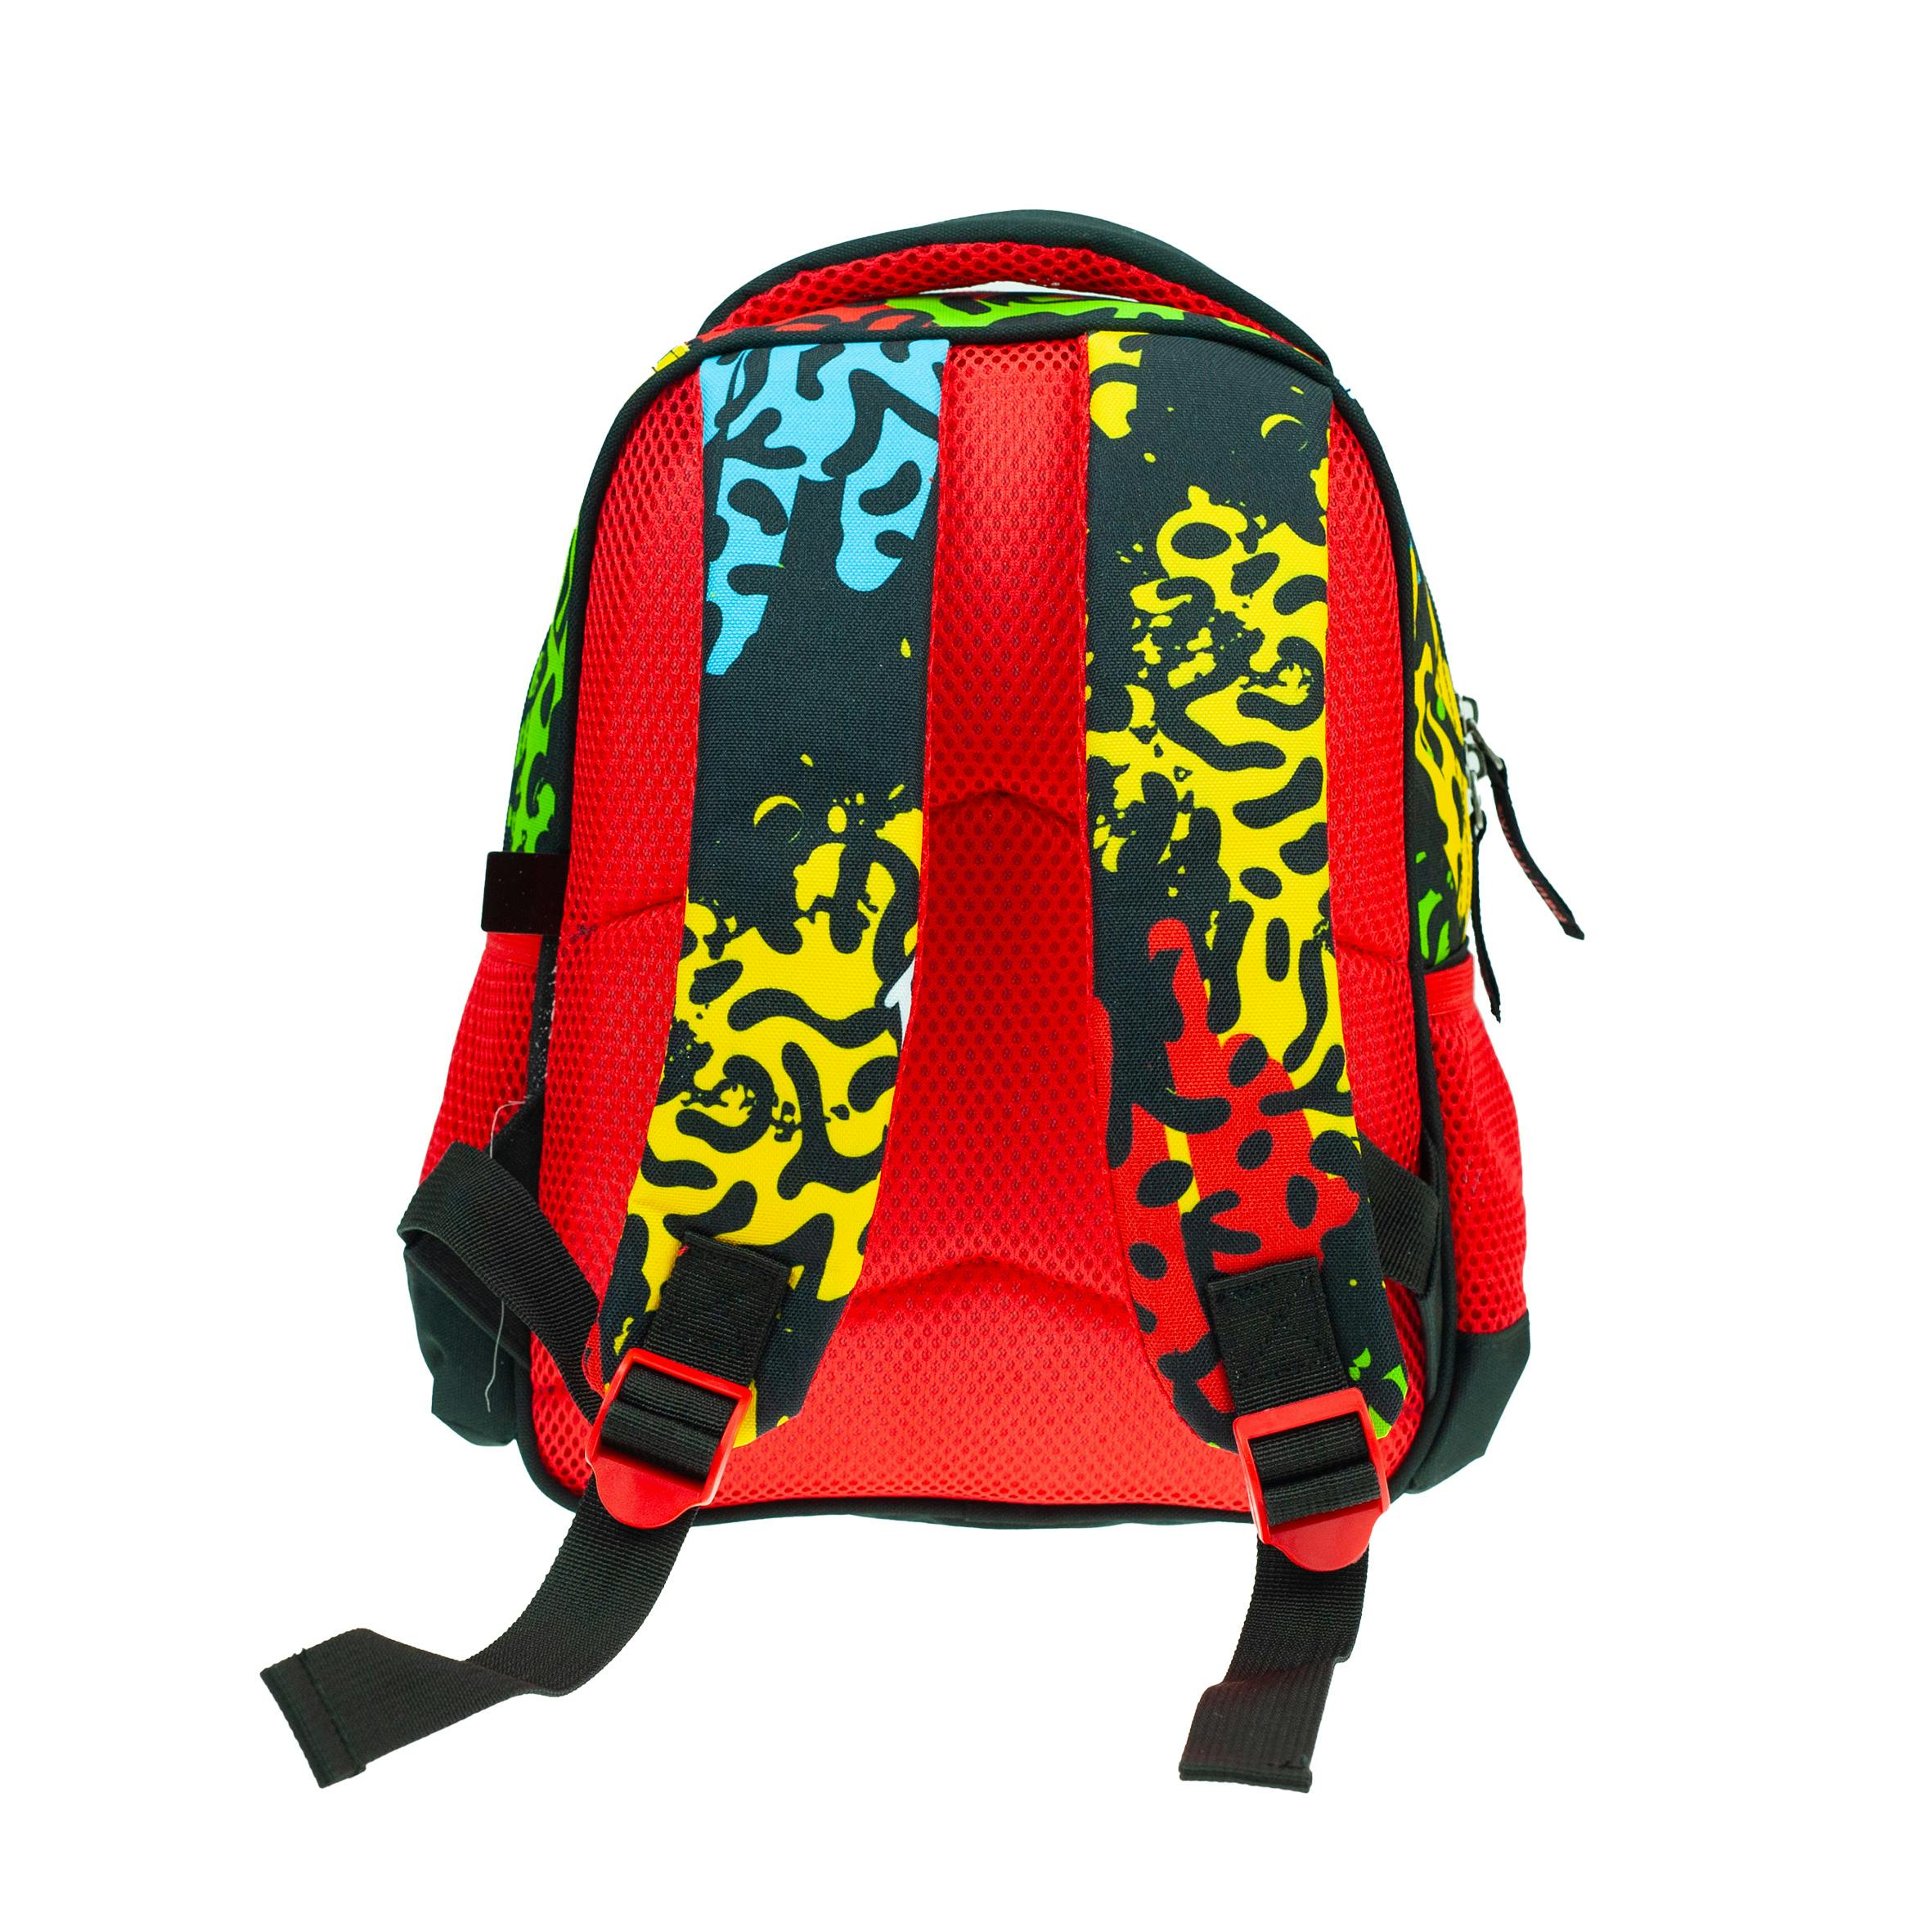 BMU - Back Me Up Junior Backpack PAUL FRANK SKATE Σχολική Τσάντα Πλάτης Νηπίου 346-83054